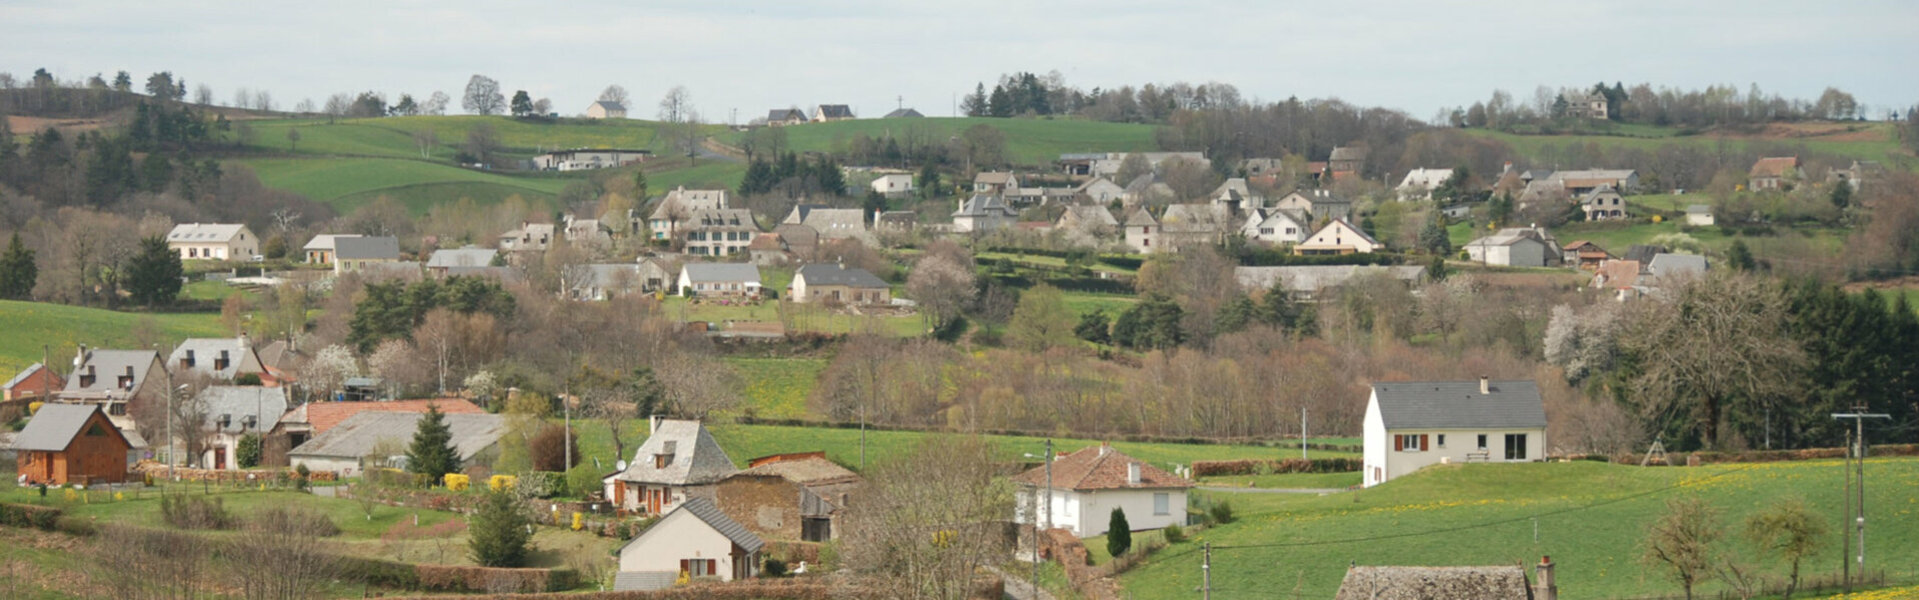 Teissieres à la campagne dans le Cantal